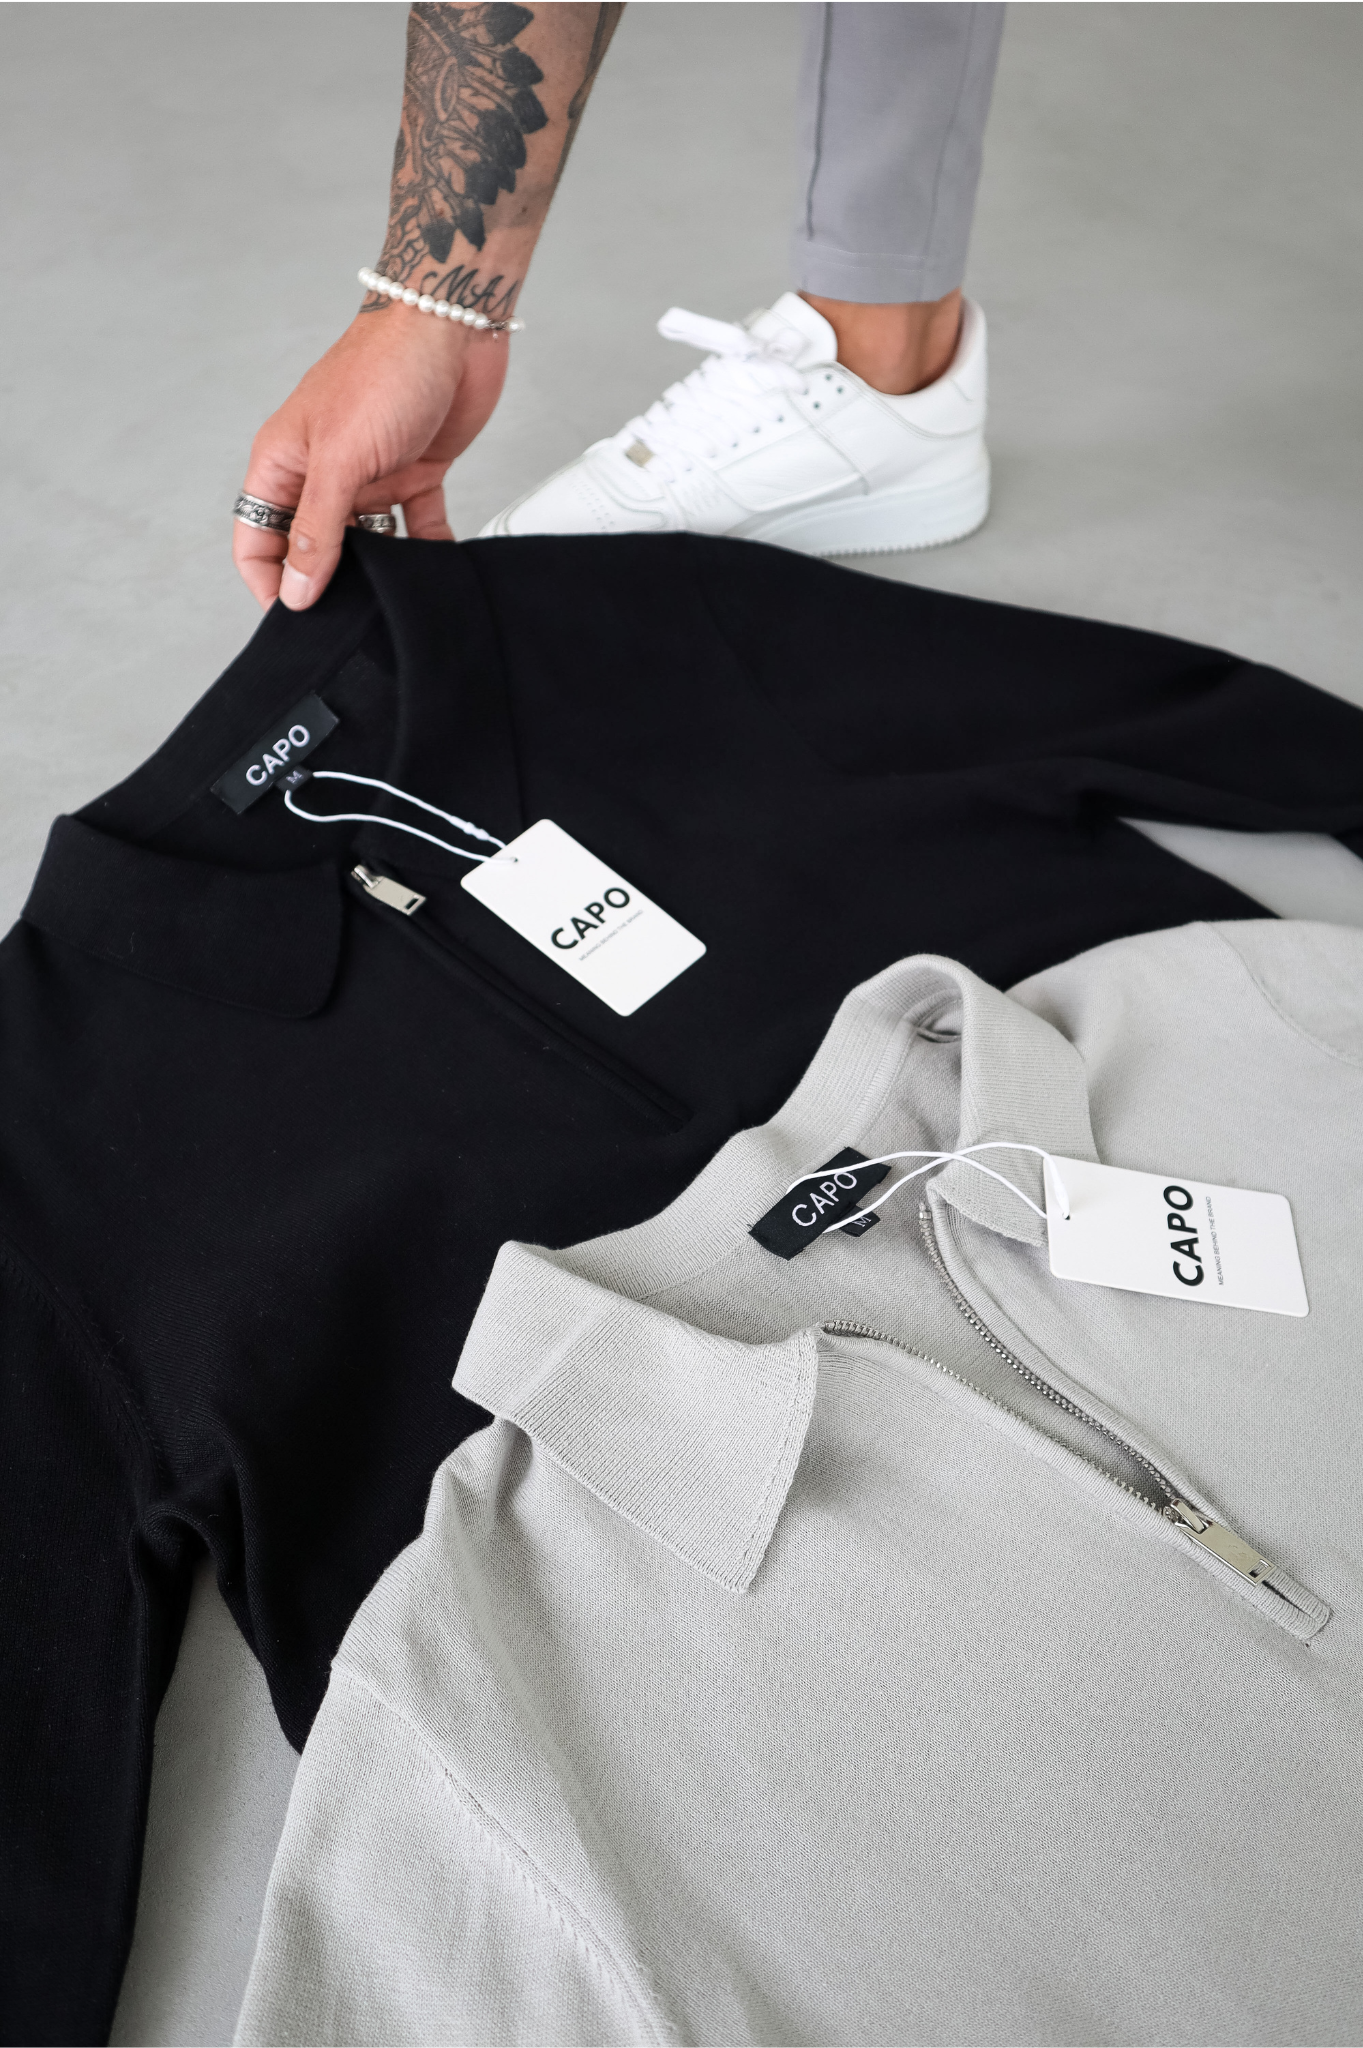 Capo Egyptian Cotton LS Zip Polo Shirt - Black